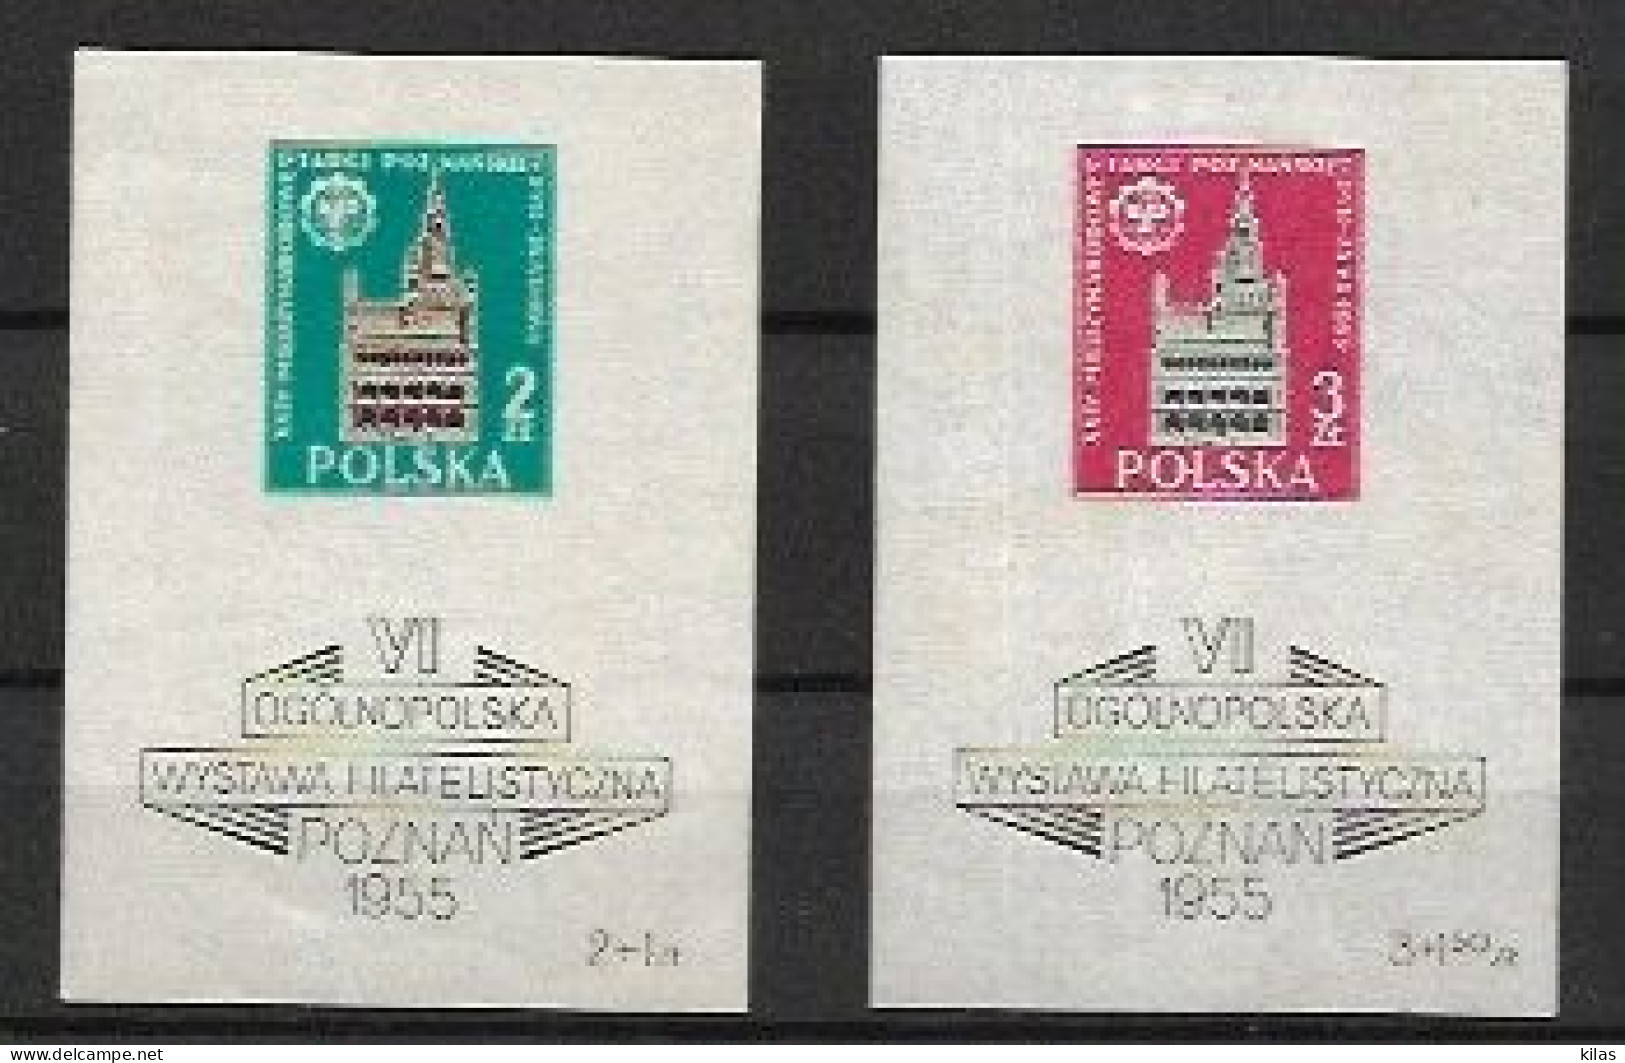 POLAND 1955 Sixth Poznan Philatelic Exhibition MNH - Blocchi E Foglietti